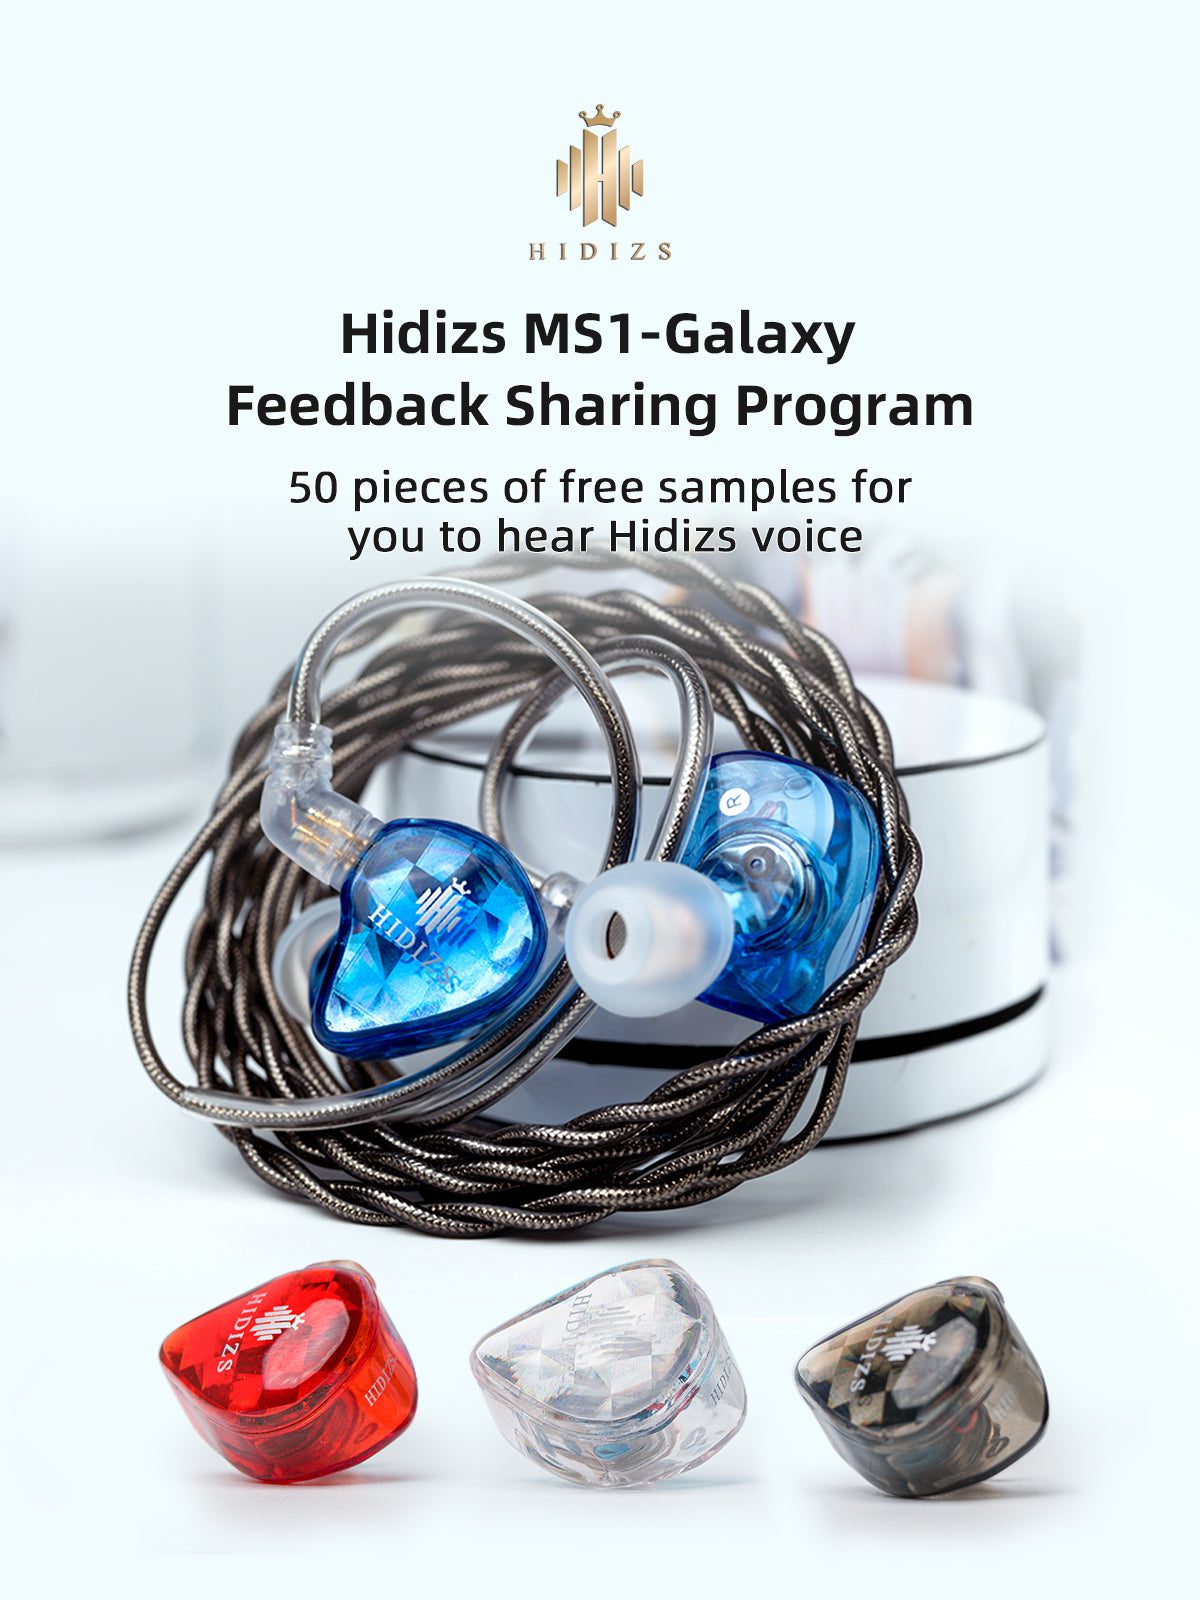 HIDIZS-Hidizs_MS1-Galaxy_Feedback_Sharing_Program-BANNER-230811-02